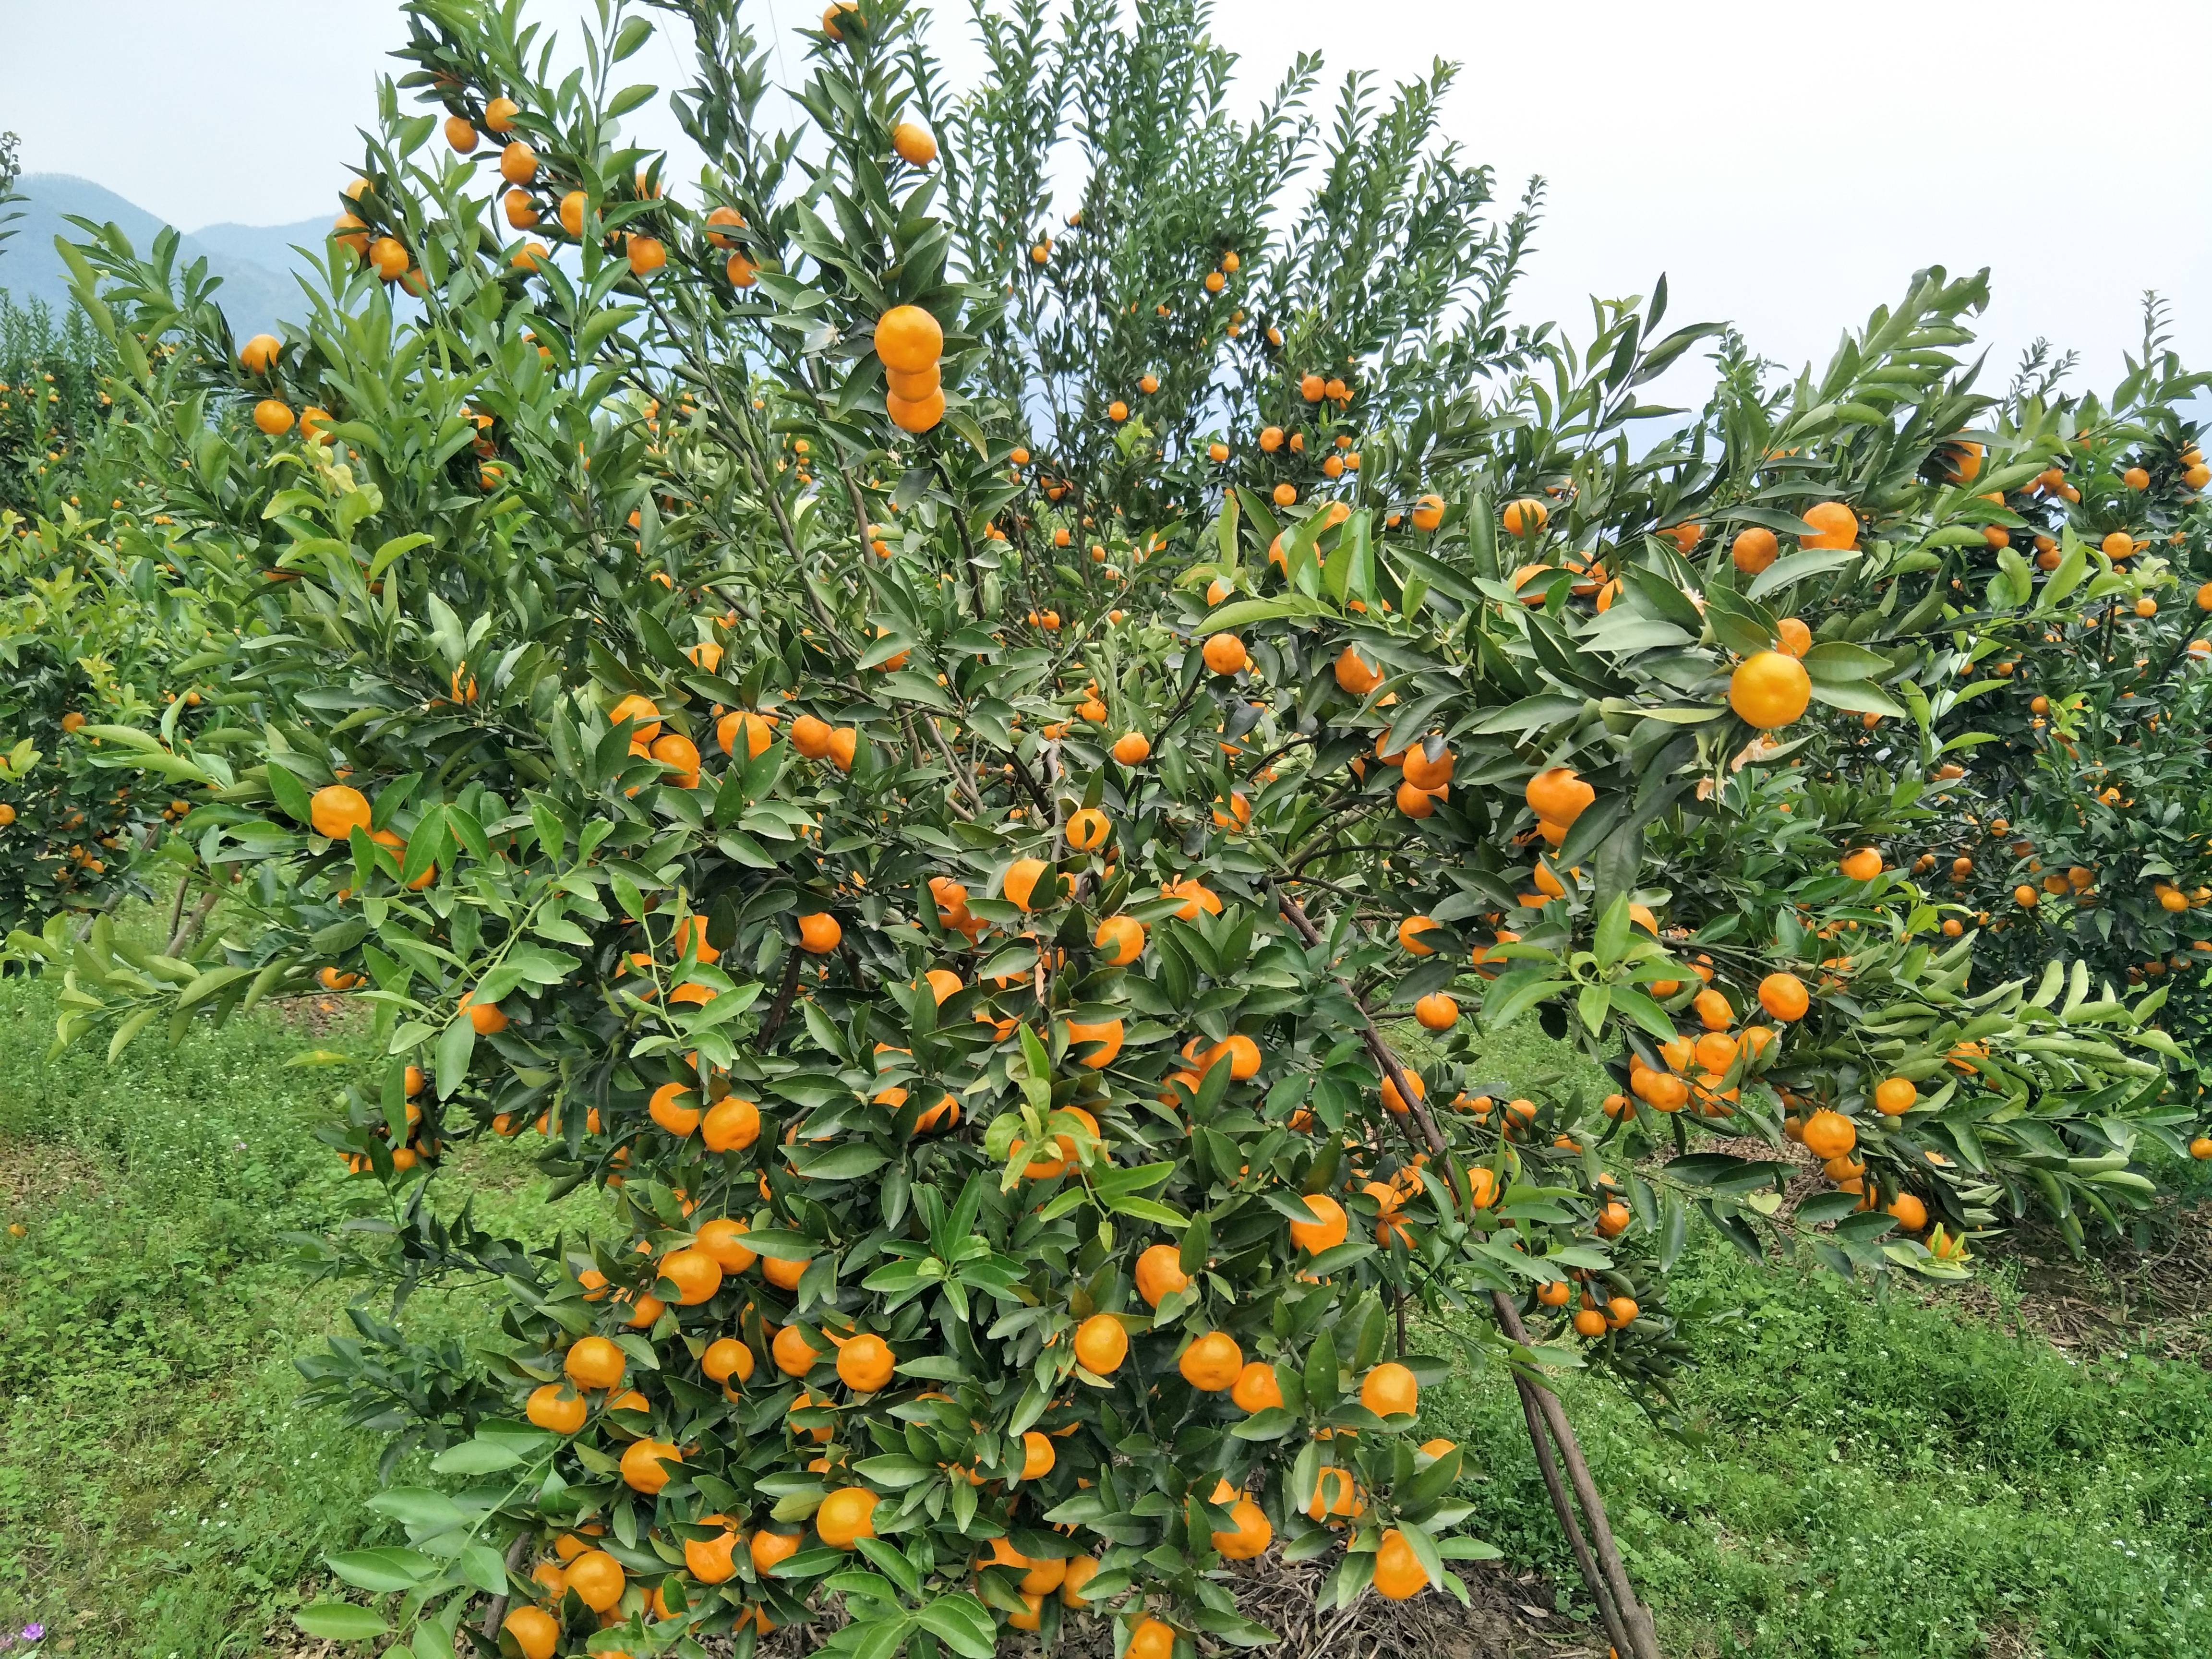 桂林市灵川县
马水橘开园了，约10万斤；
还有茂谷柑约2万斤；沃柑也有万吧斤。
欢迎老板来骚扰，电话15607830930。